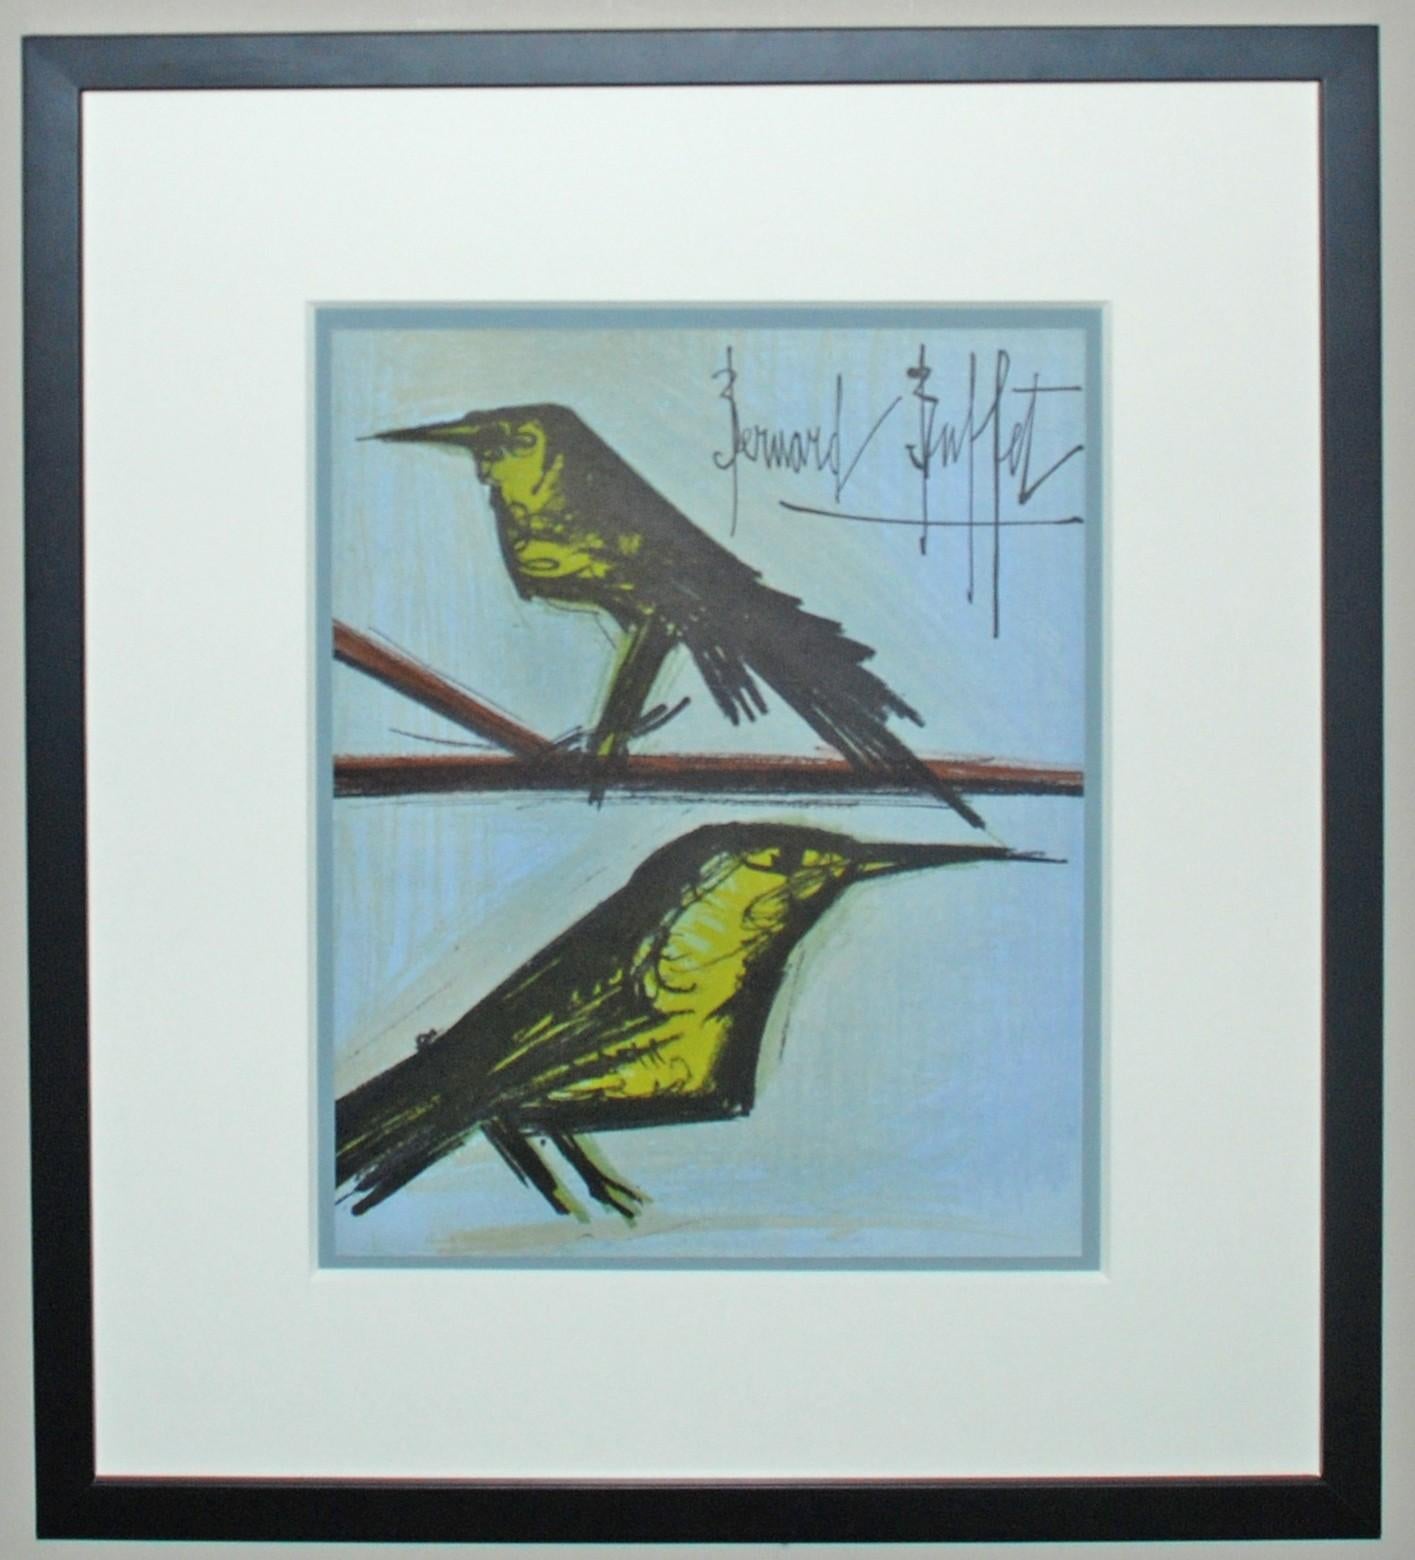 Bernard Buffet Animal Print - Bird Couple (frontispiece)